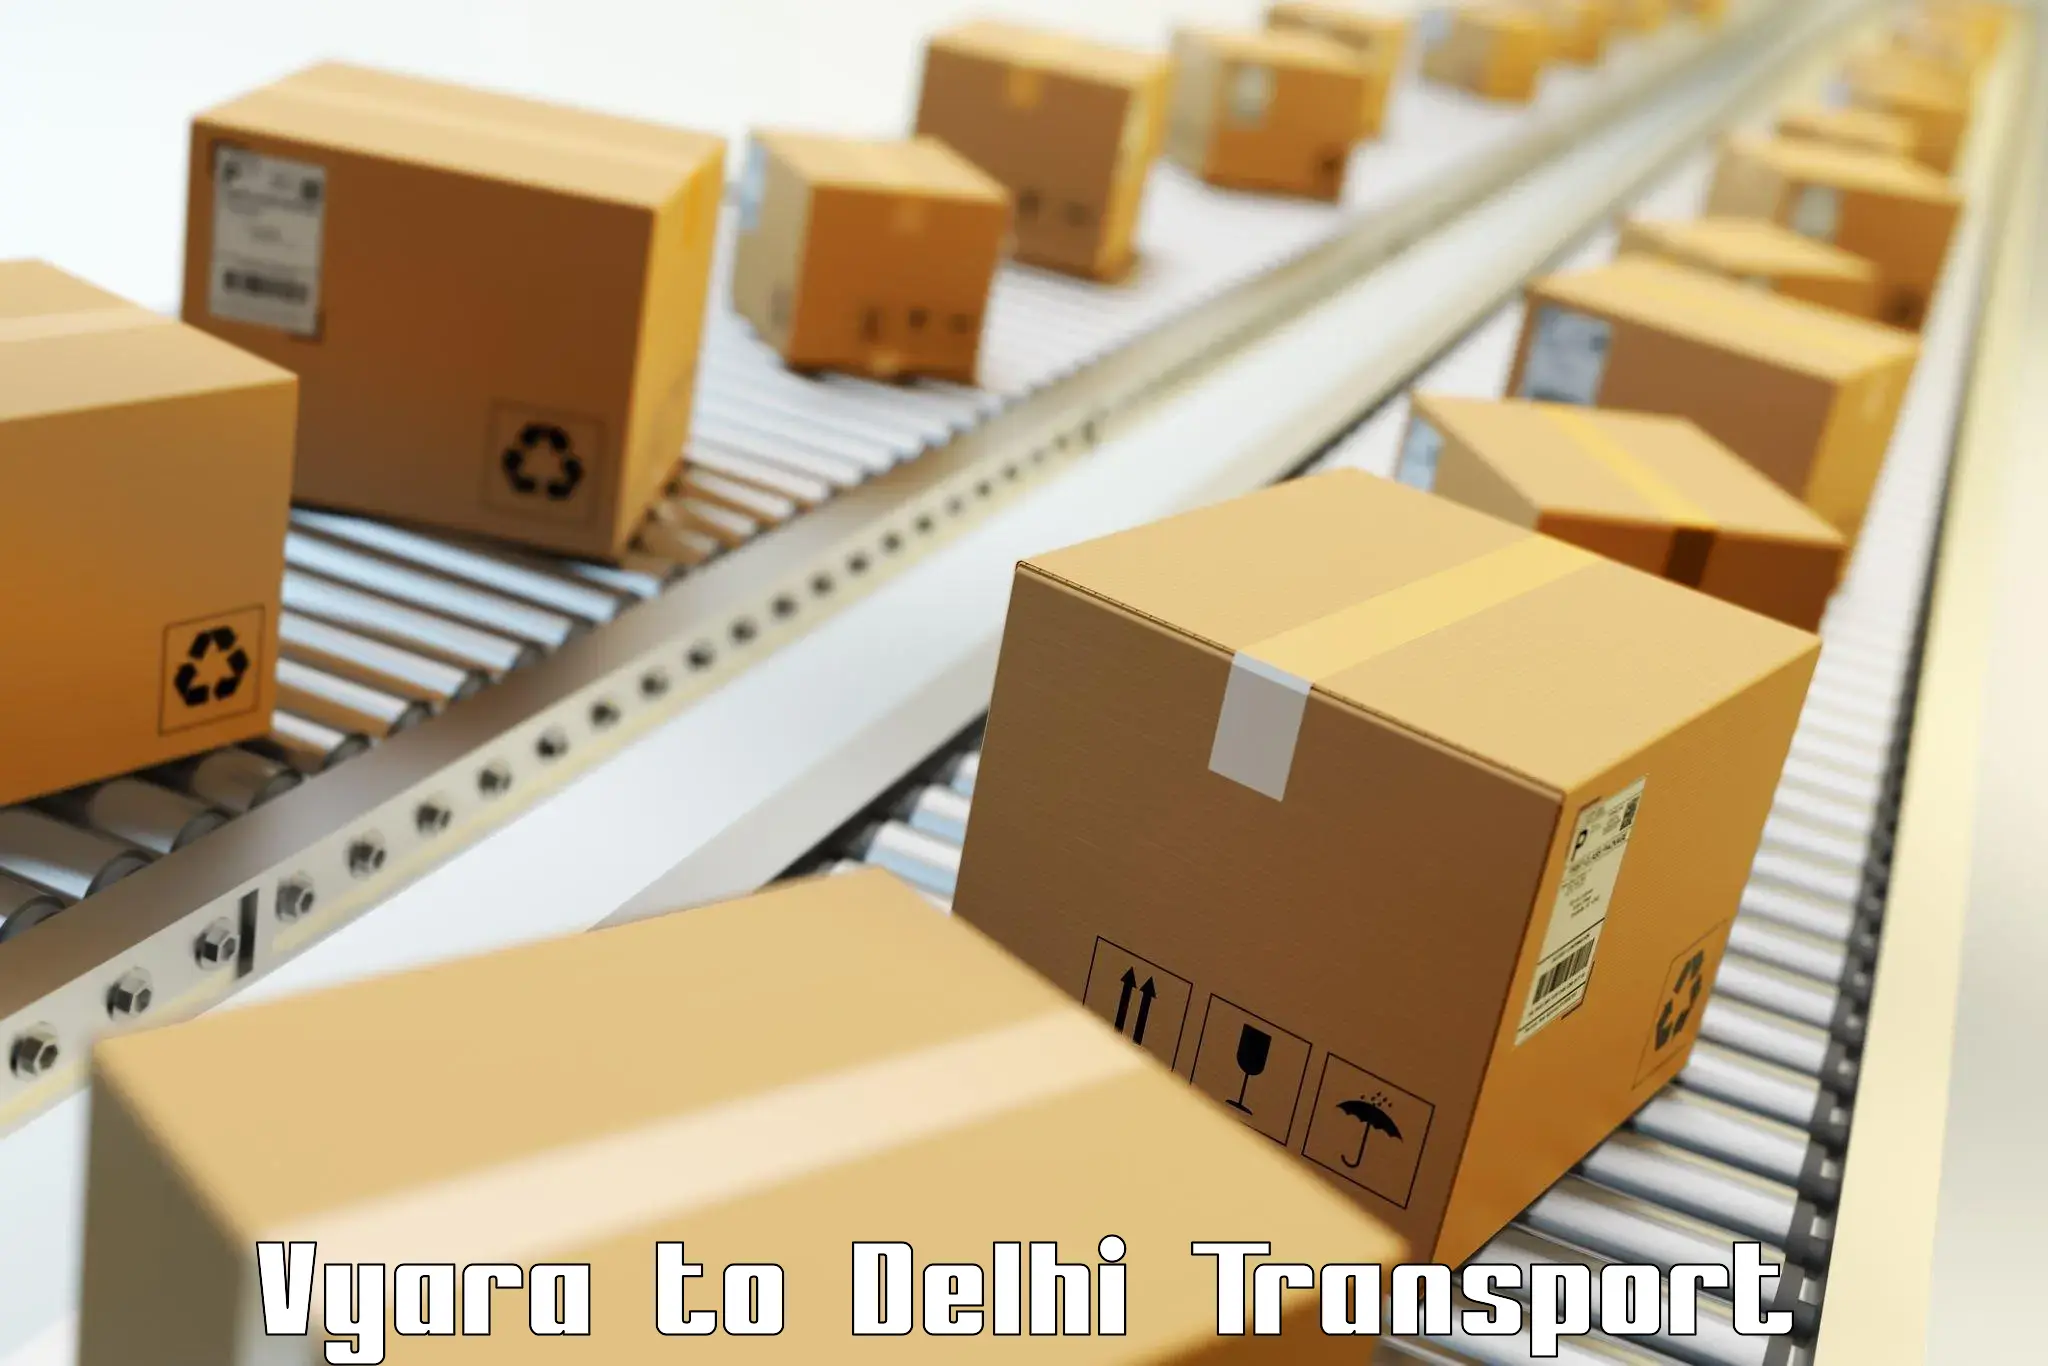 Intercity transport in Vyara to Jawaharlal Nehru University New Delhi